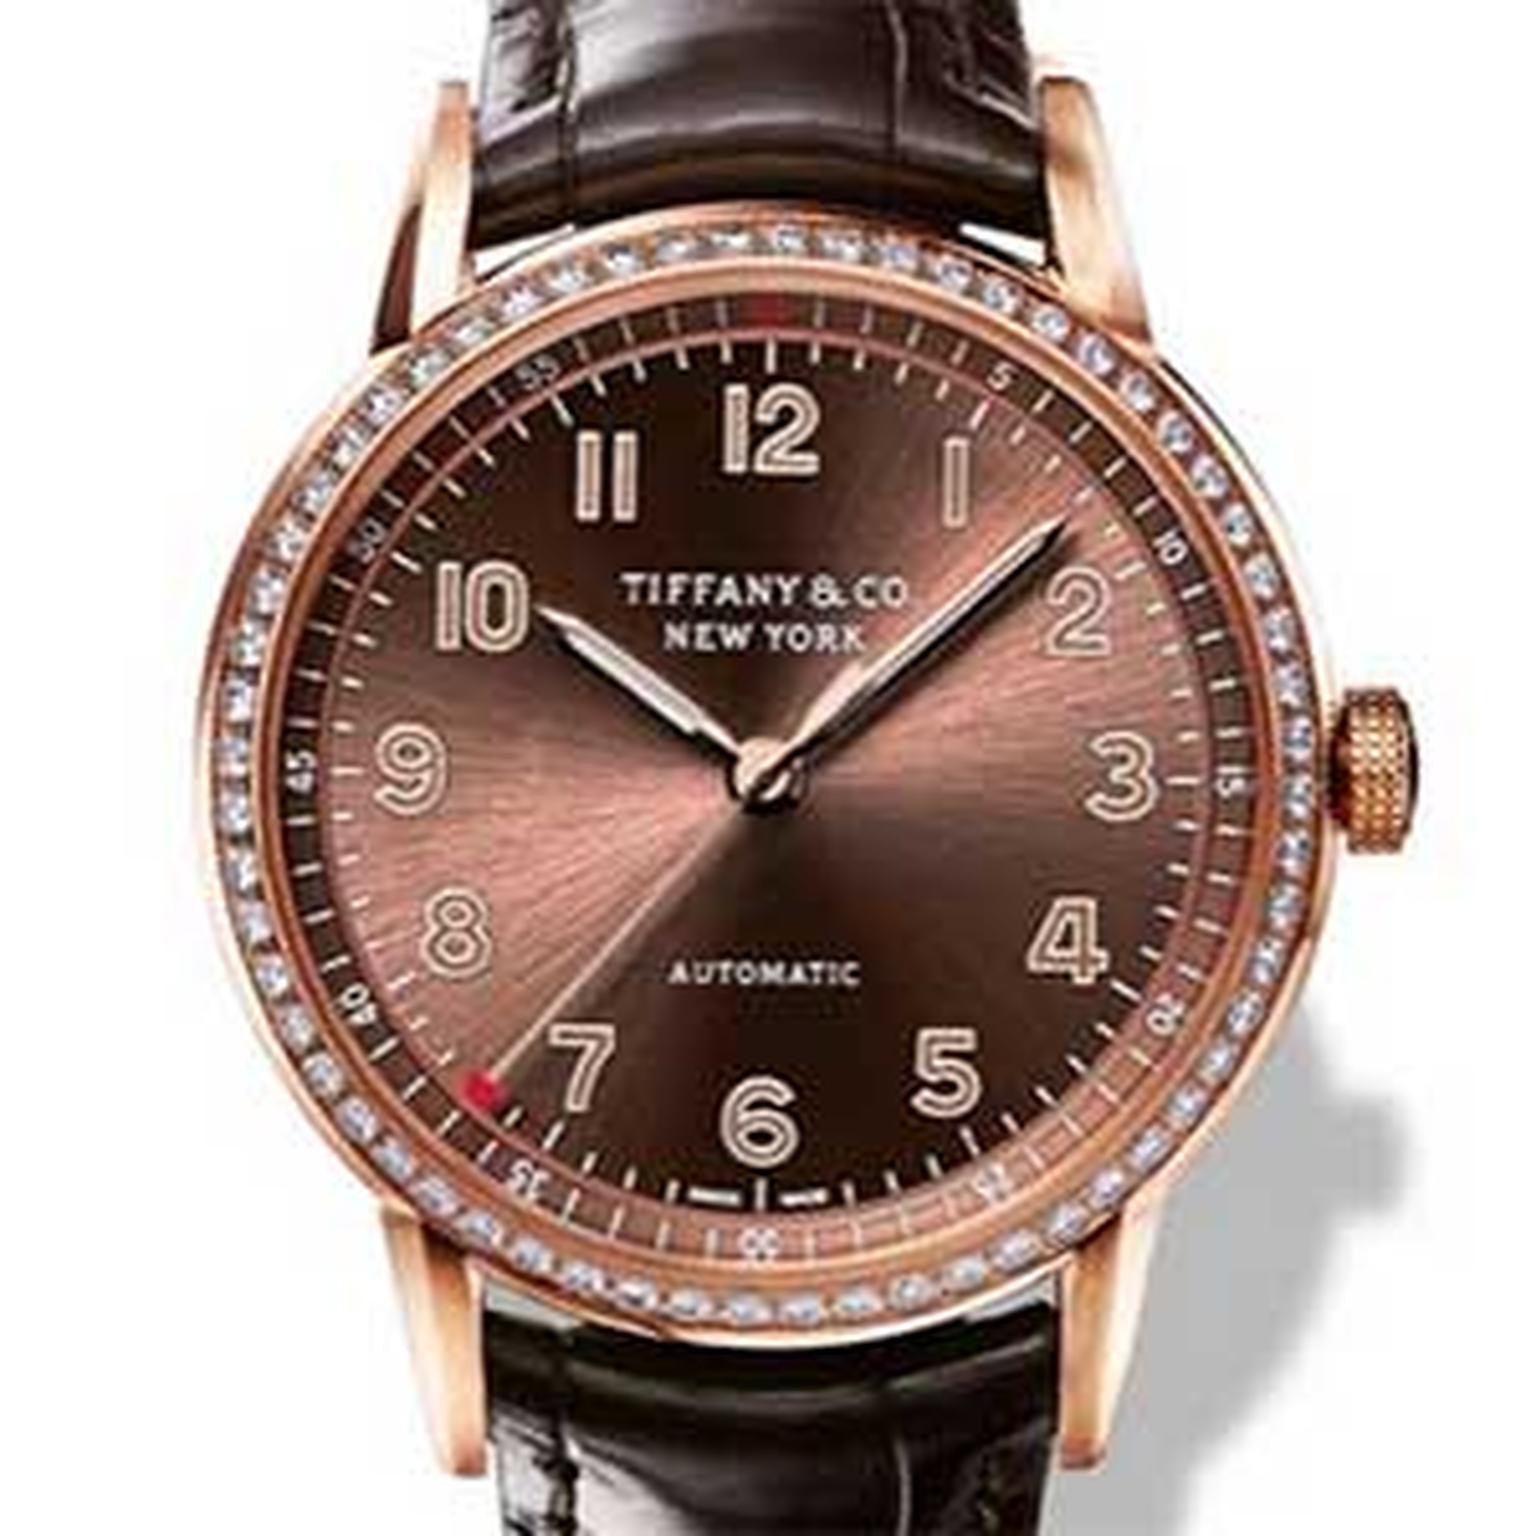 Tiffany CT60 watch